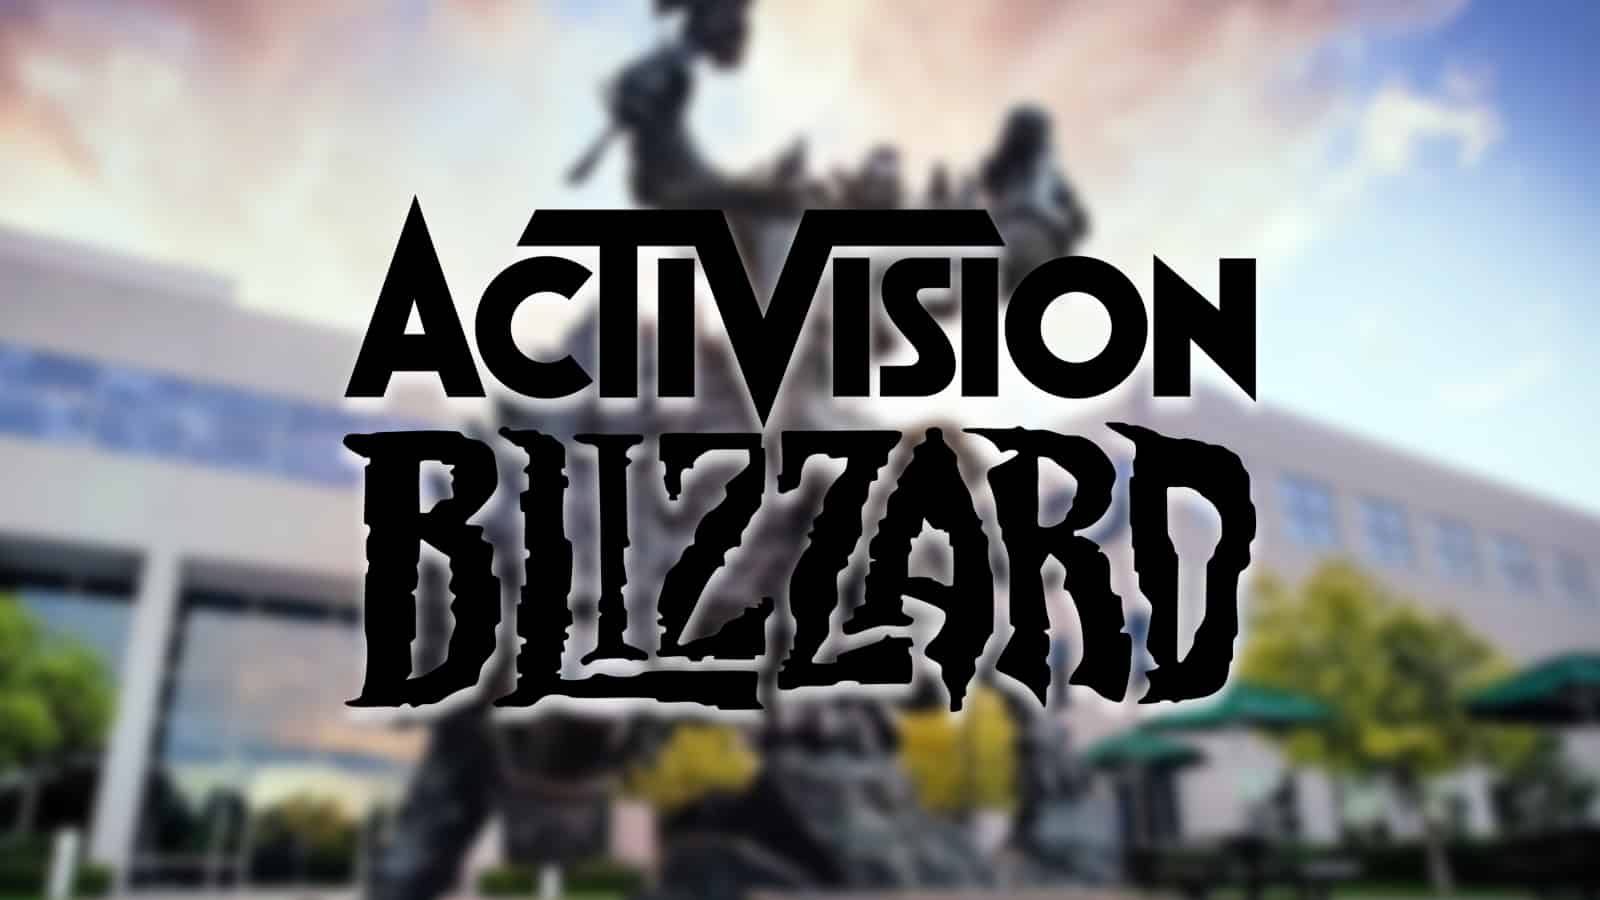 Activision blizzard 18 million discrimination suit